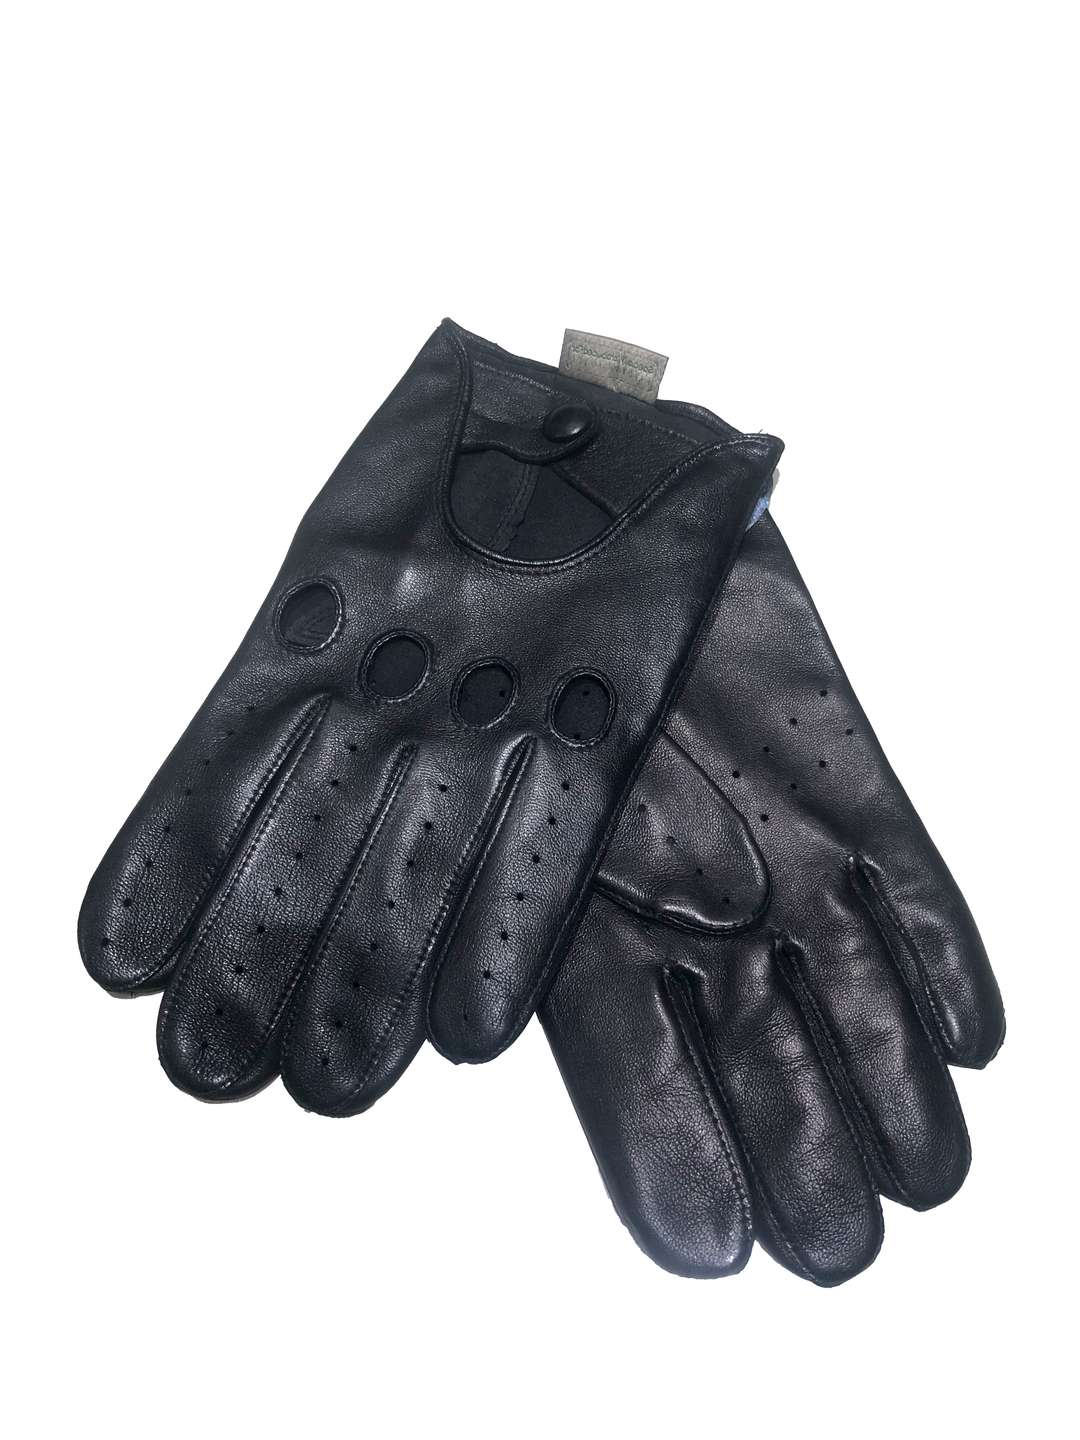 RH Handsker 400162 - Leather - Drivers glove - Black